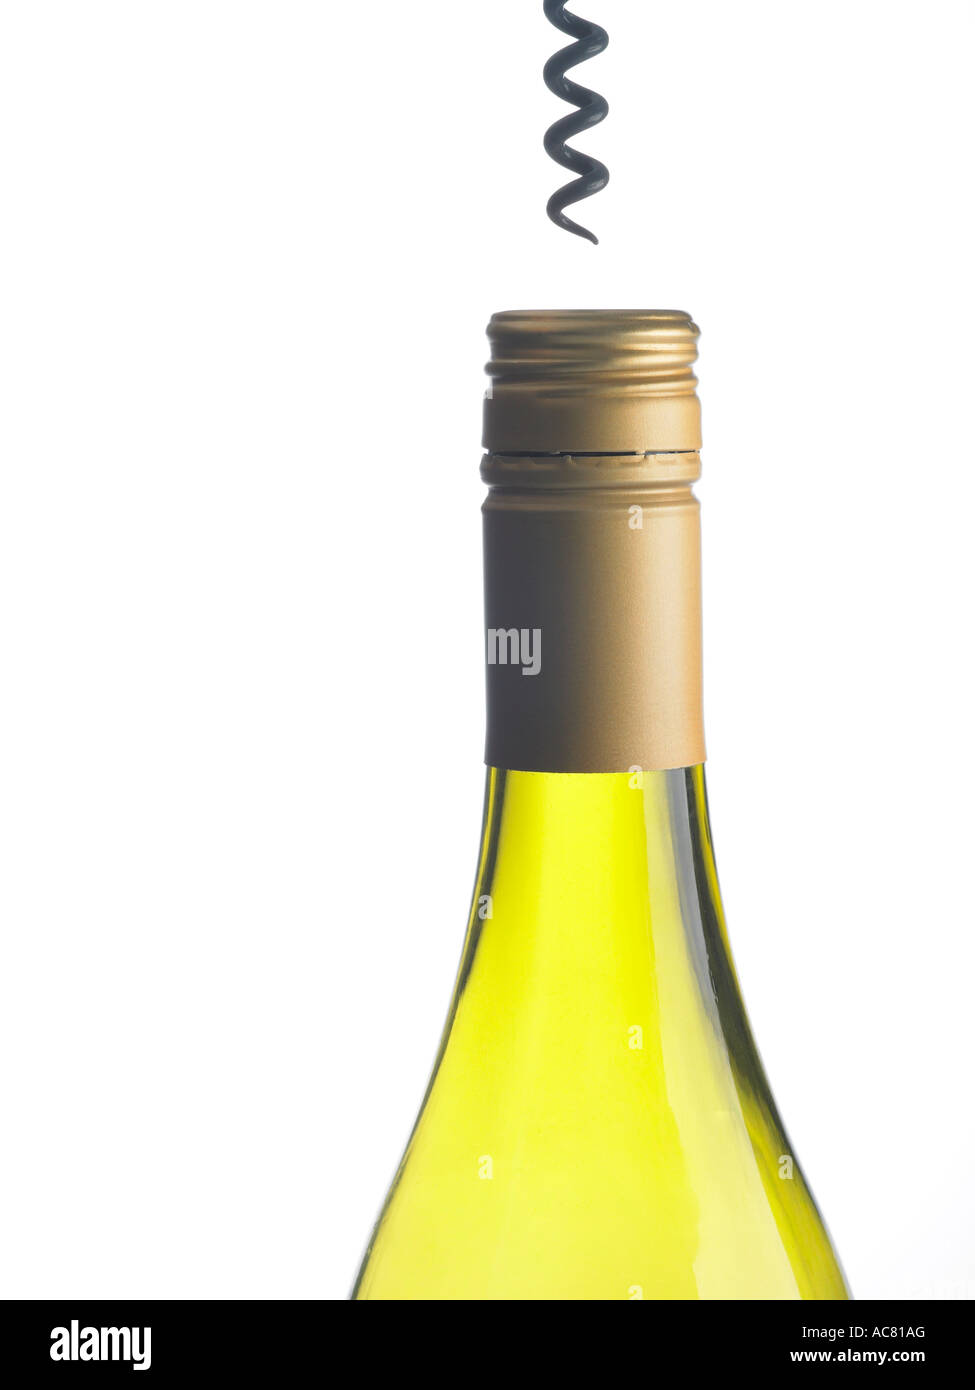 Schraubverschluss Flasche Wein Und Korkenzieher Stockfotografie Alamy